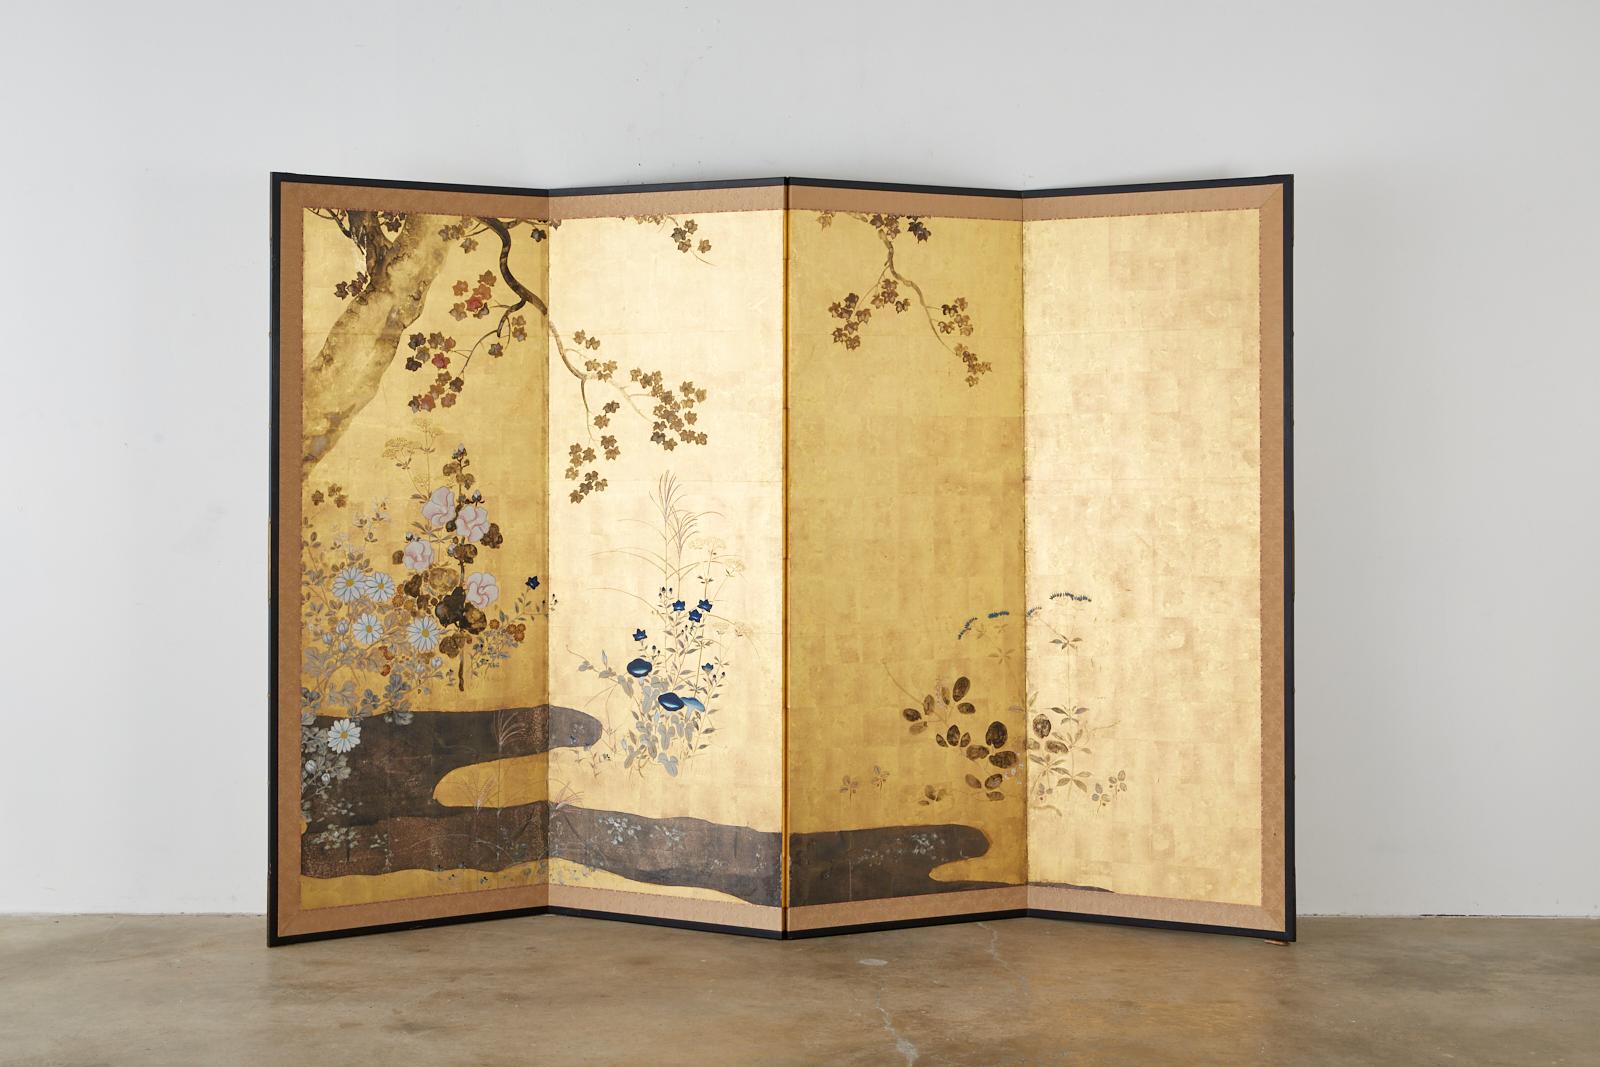 Magnifique paravent japonais à quatre panneaux, datant du XIXe siècle (Meiji). Réalisé dans le style de l'école Rimpa, il représente un paysage d'automne floral et serein. Magnifique peinture à l'encre sumi et pigments de couleur sur des carrés de